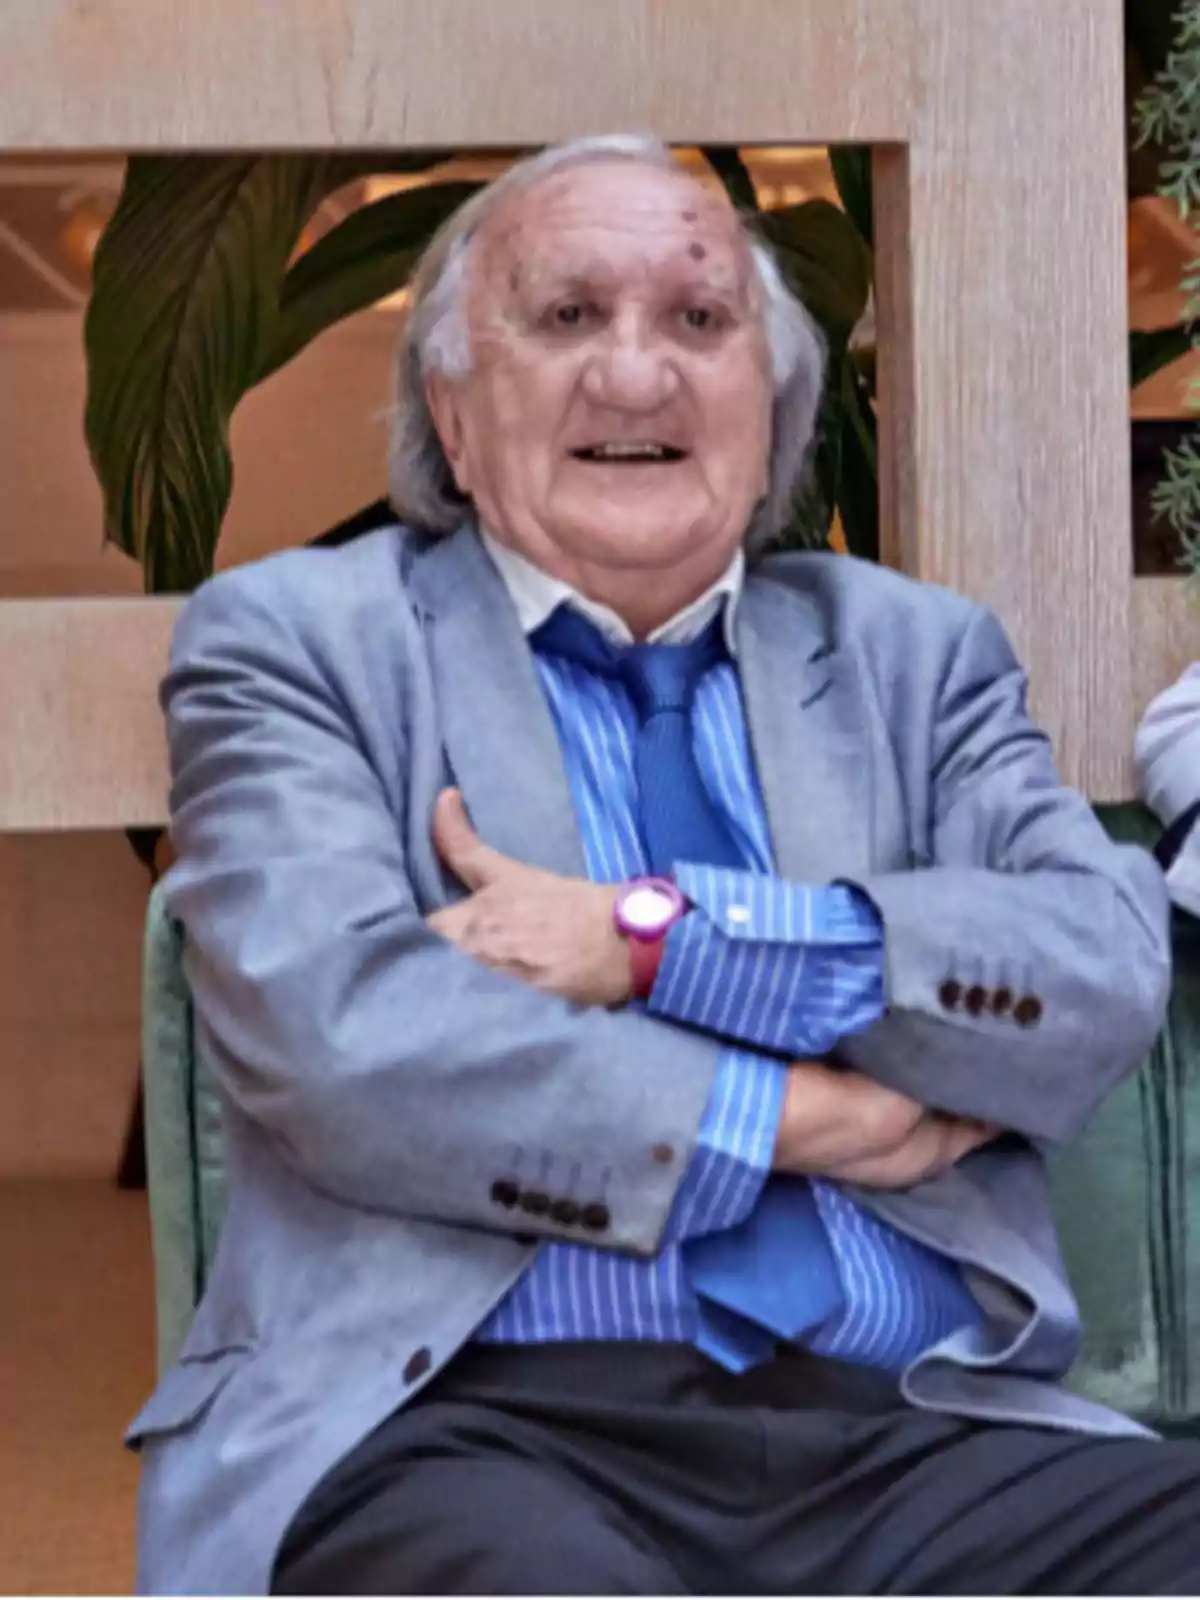 Un hombre mayor con cabello canoso y una chaqueta gris, camisa azul a rayas y corbata azul, está sentado con los brazos cruzados y sonriendo.